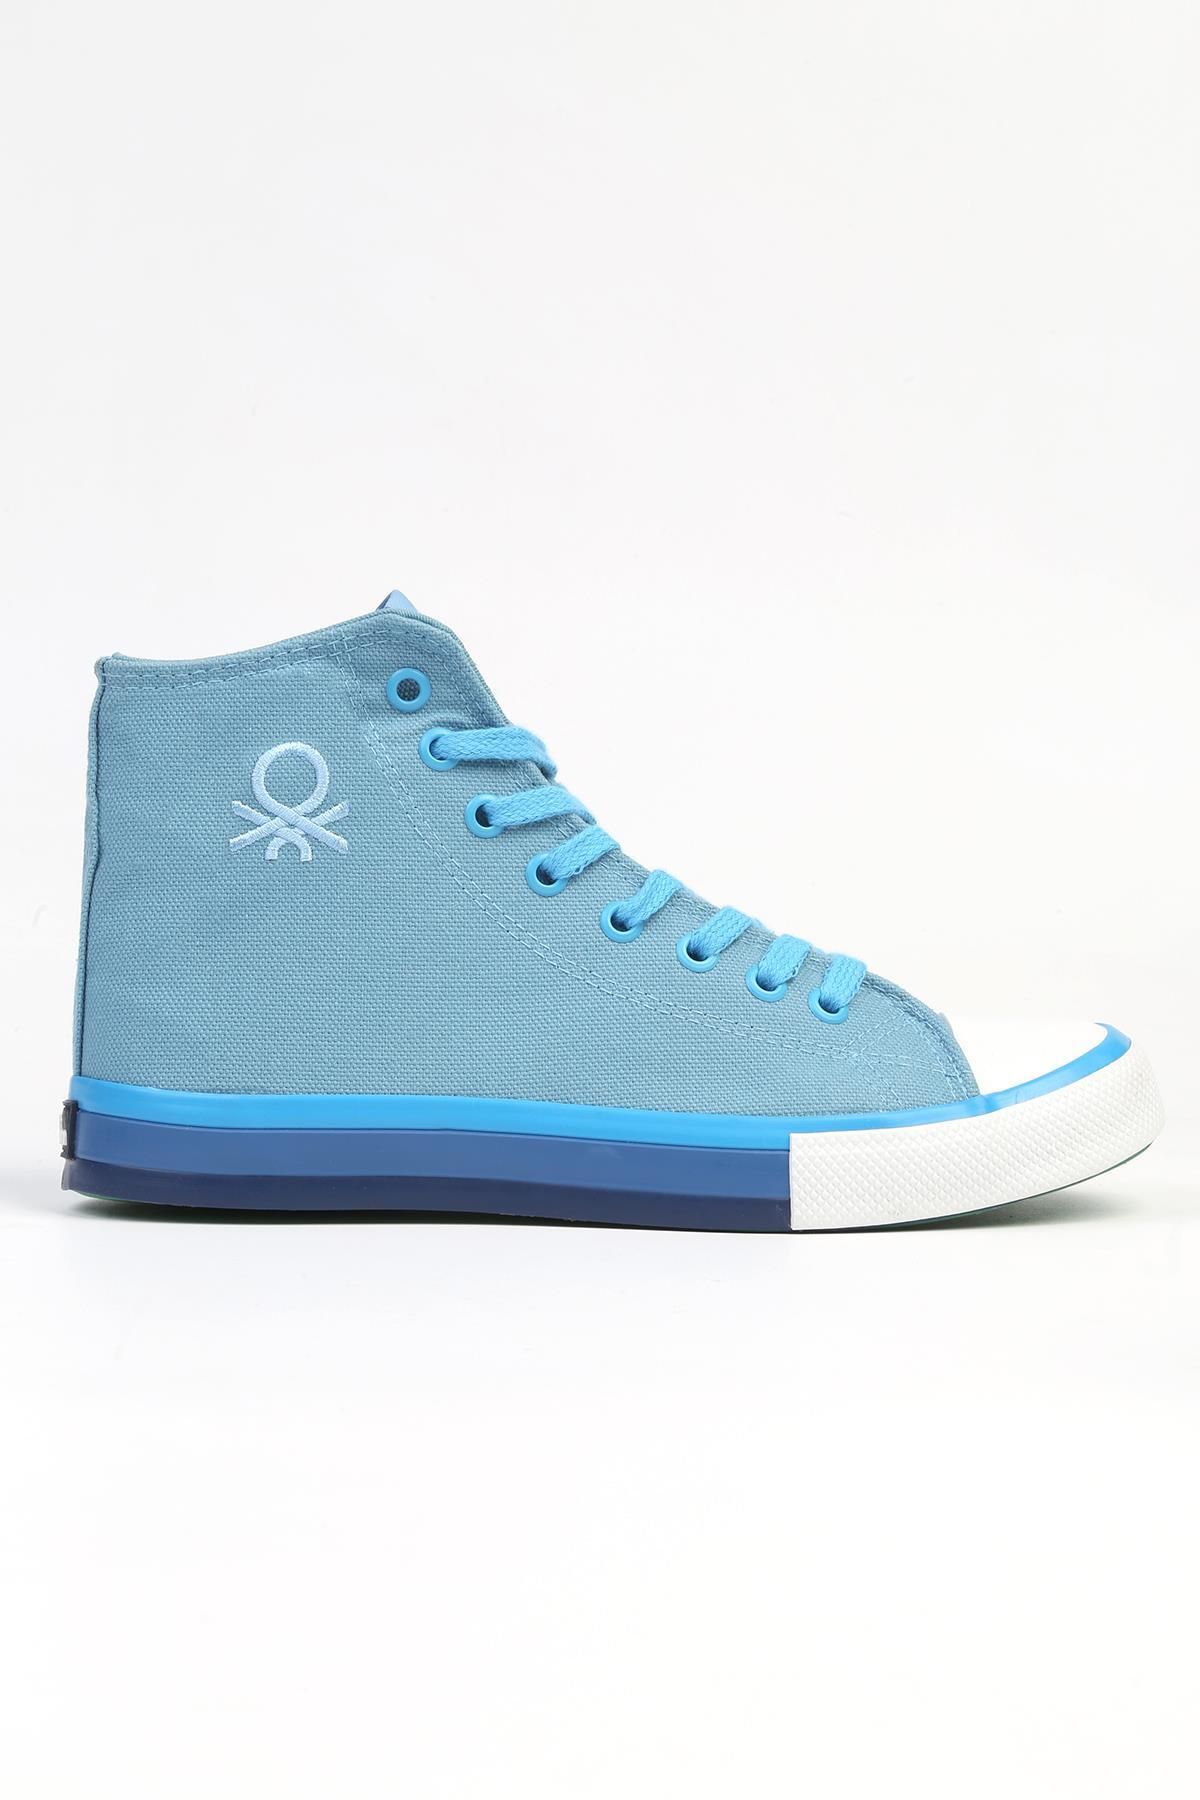 Benetton ® | BN-90192 - Mavi-Erkek Spor Ayakkabı